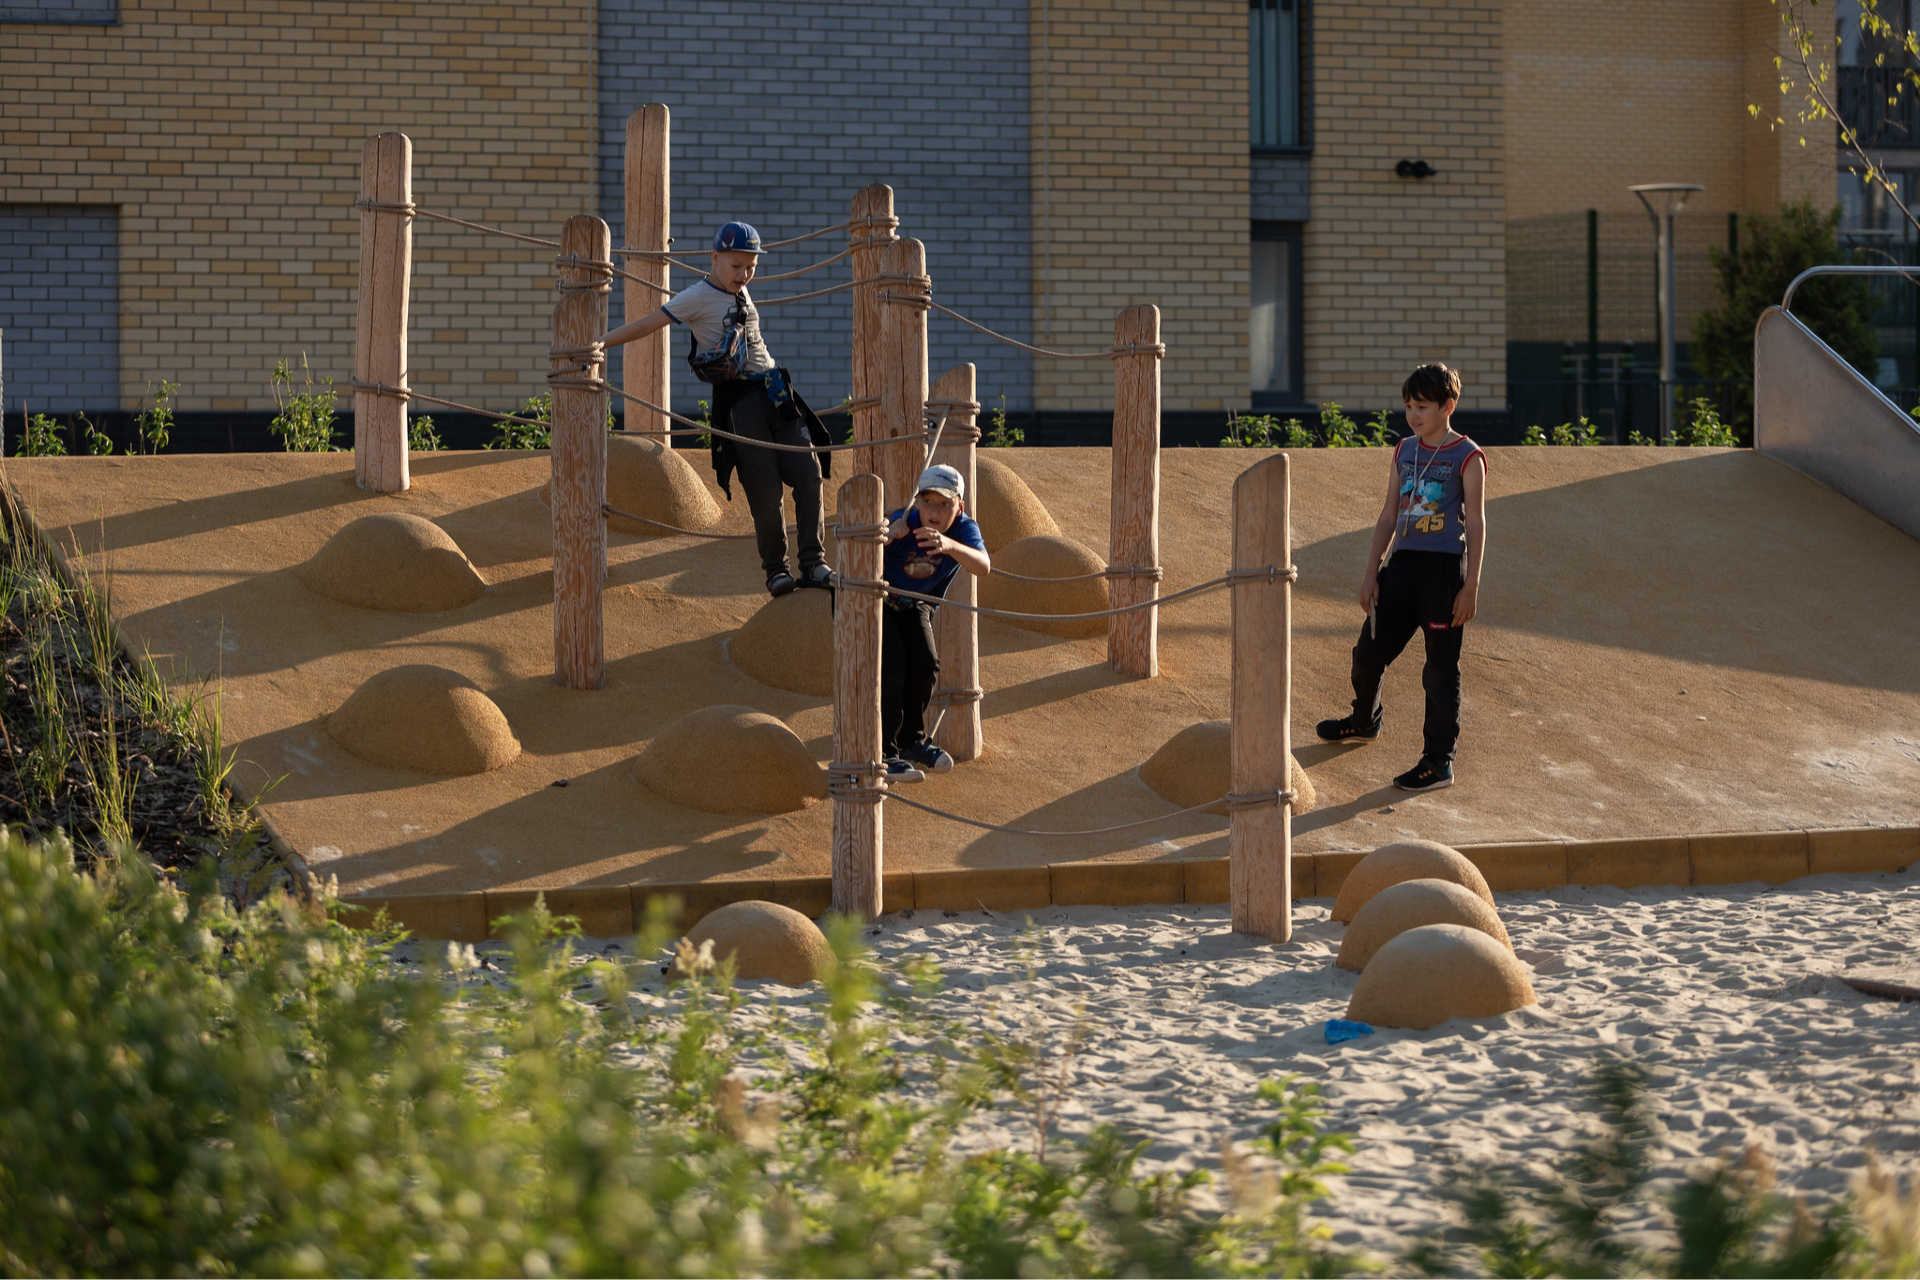 Для возможности детей контактировать с природой при проектировании детской площадки предусматривается доступ к природным материалам, используются естественные покрытия, озеленение, ландшафт